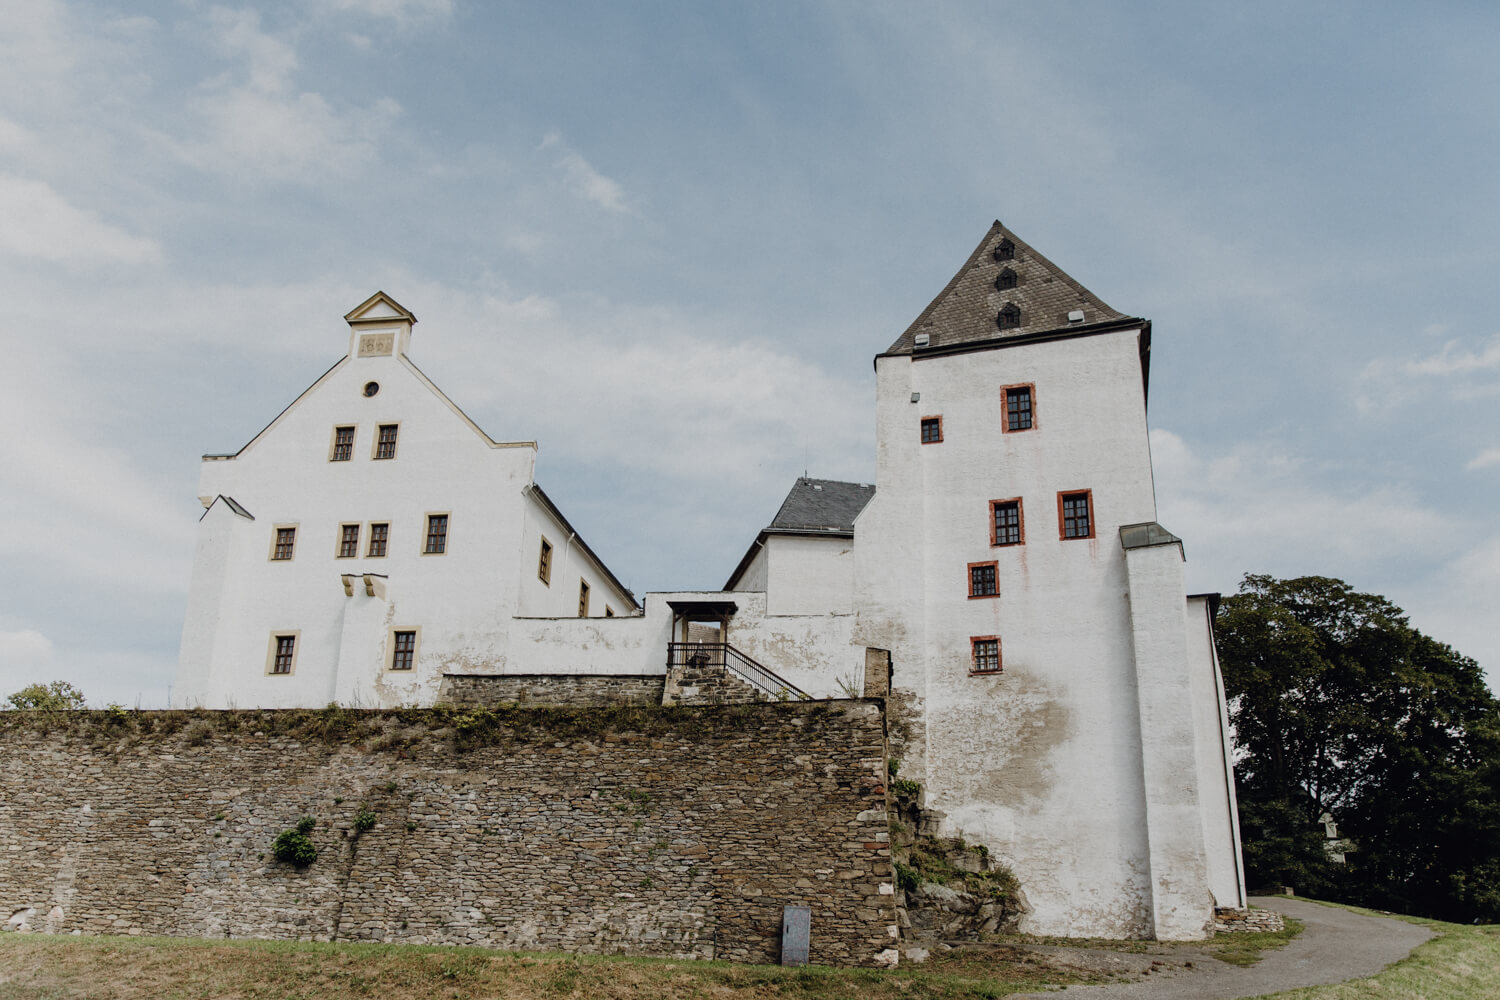 Schloss Wolkenstein